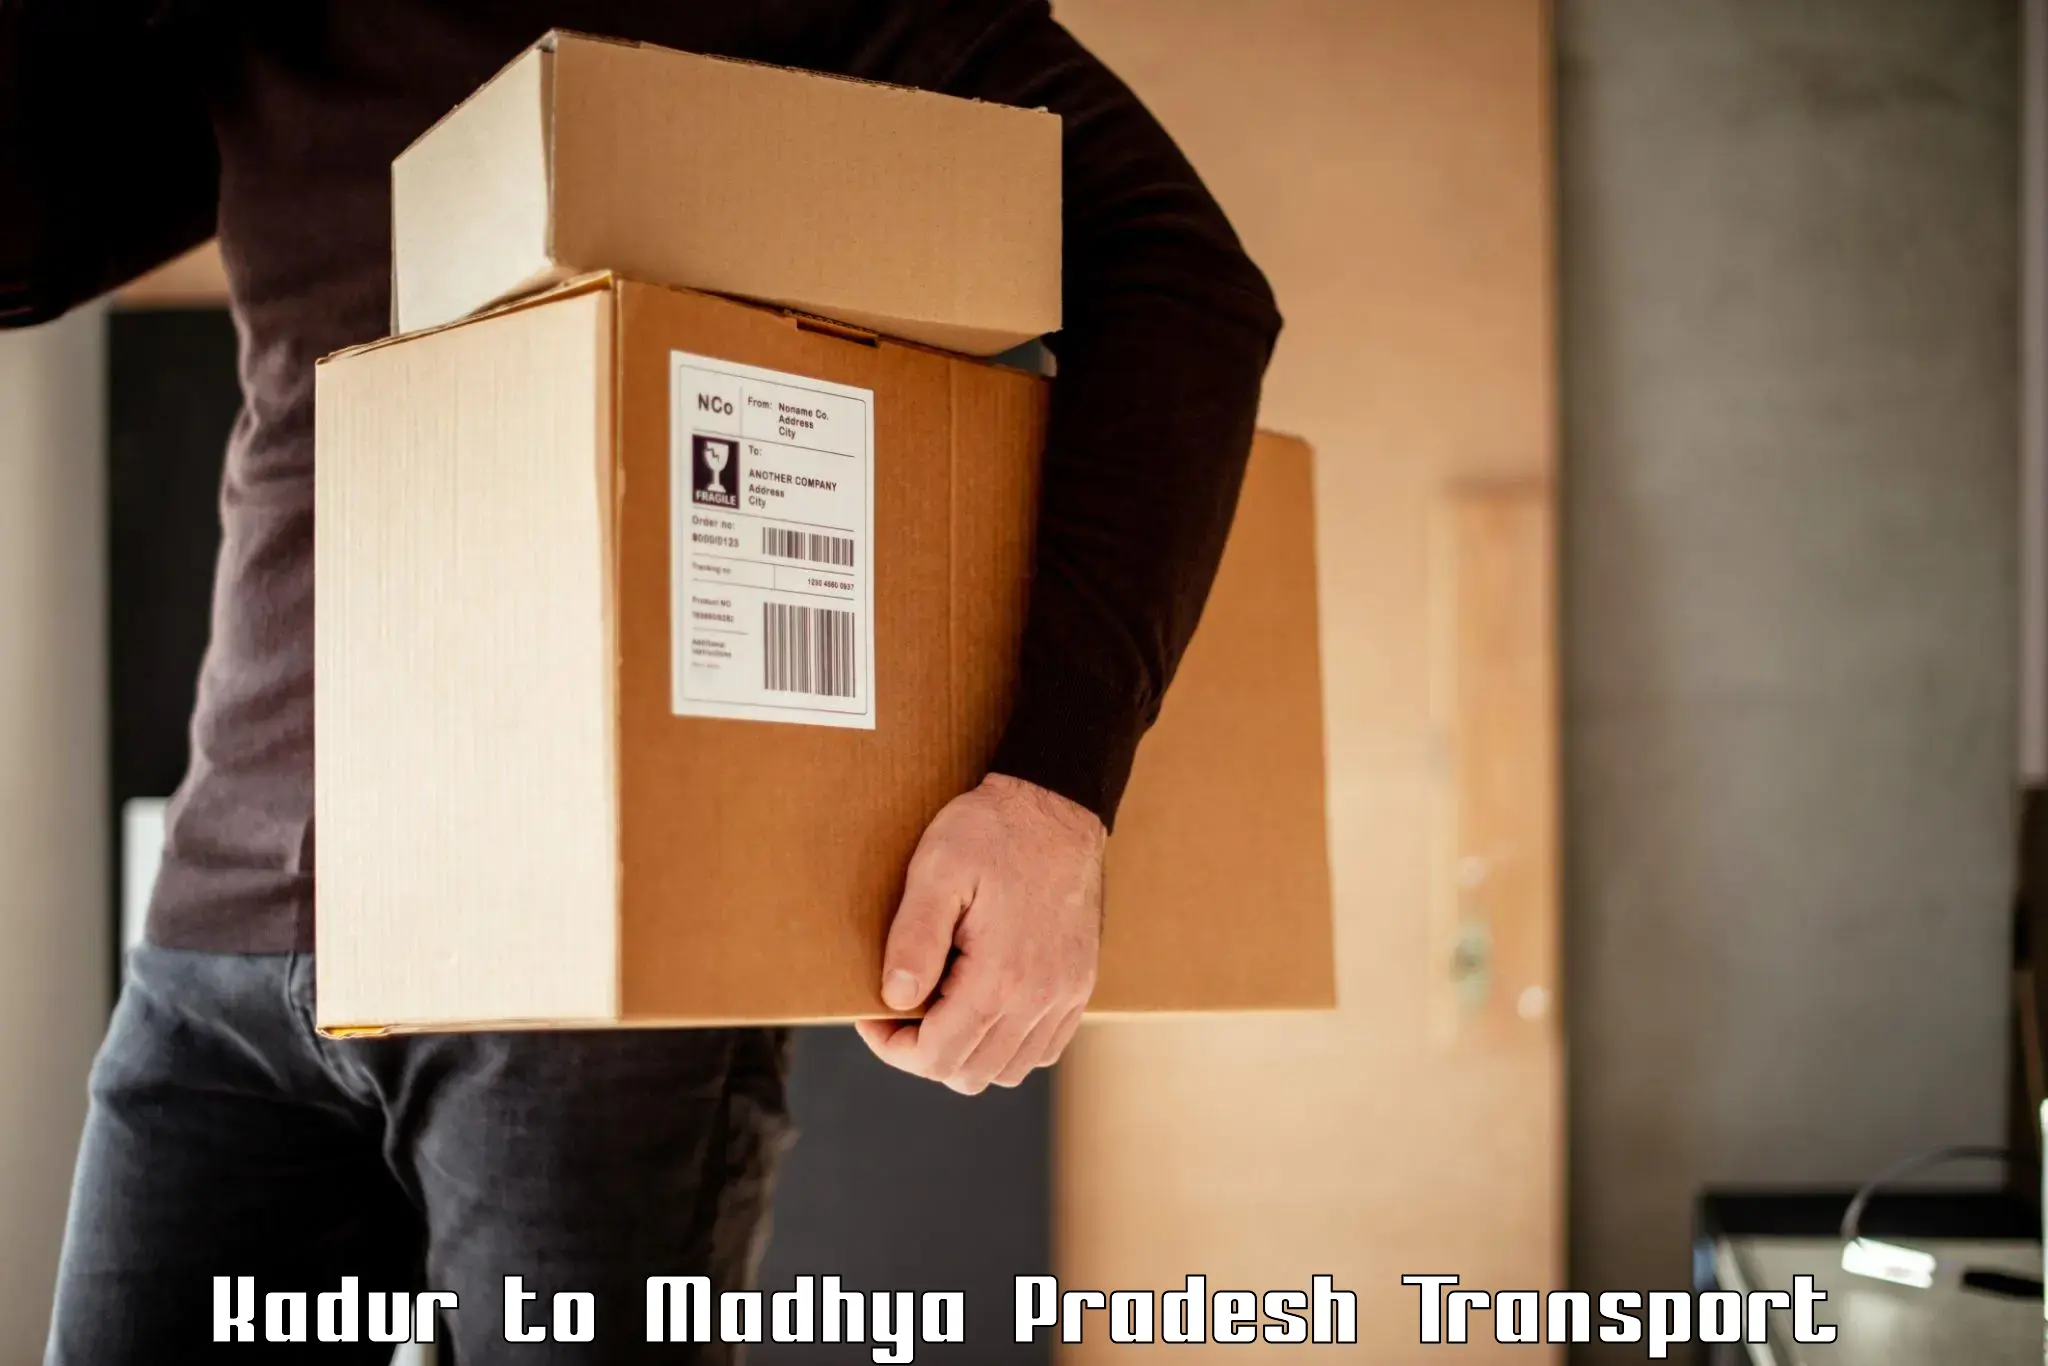 Daily parcel service transport Kadur to Ratangarh MP